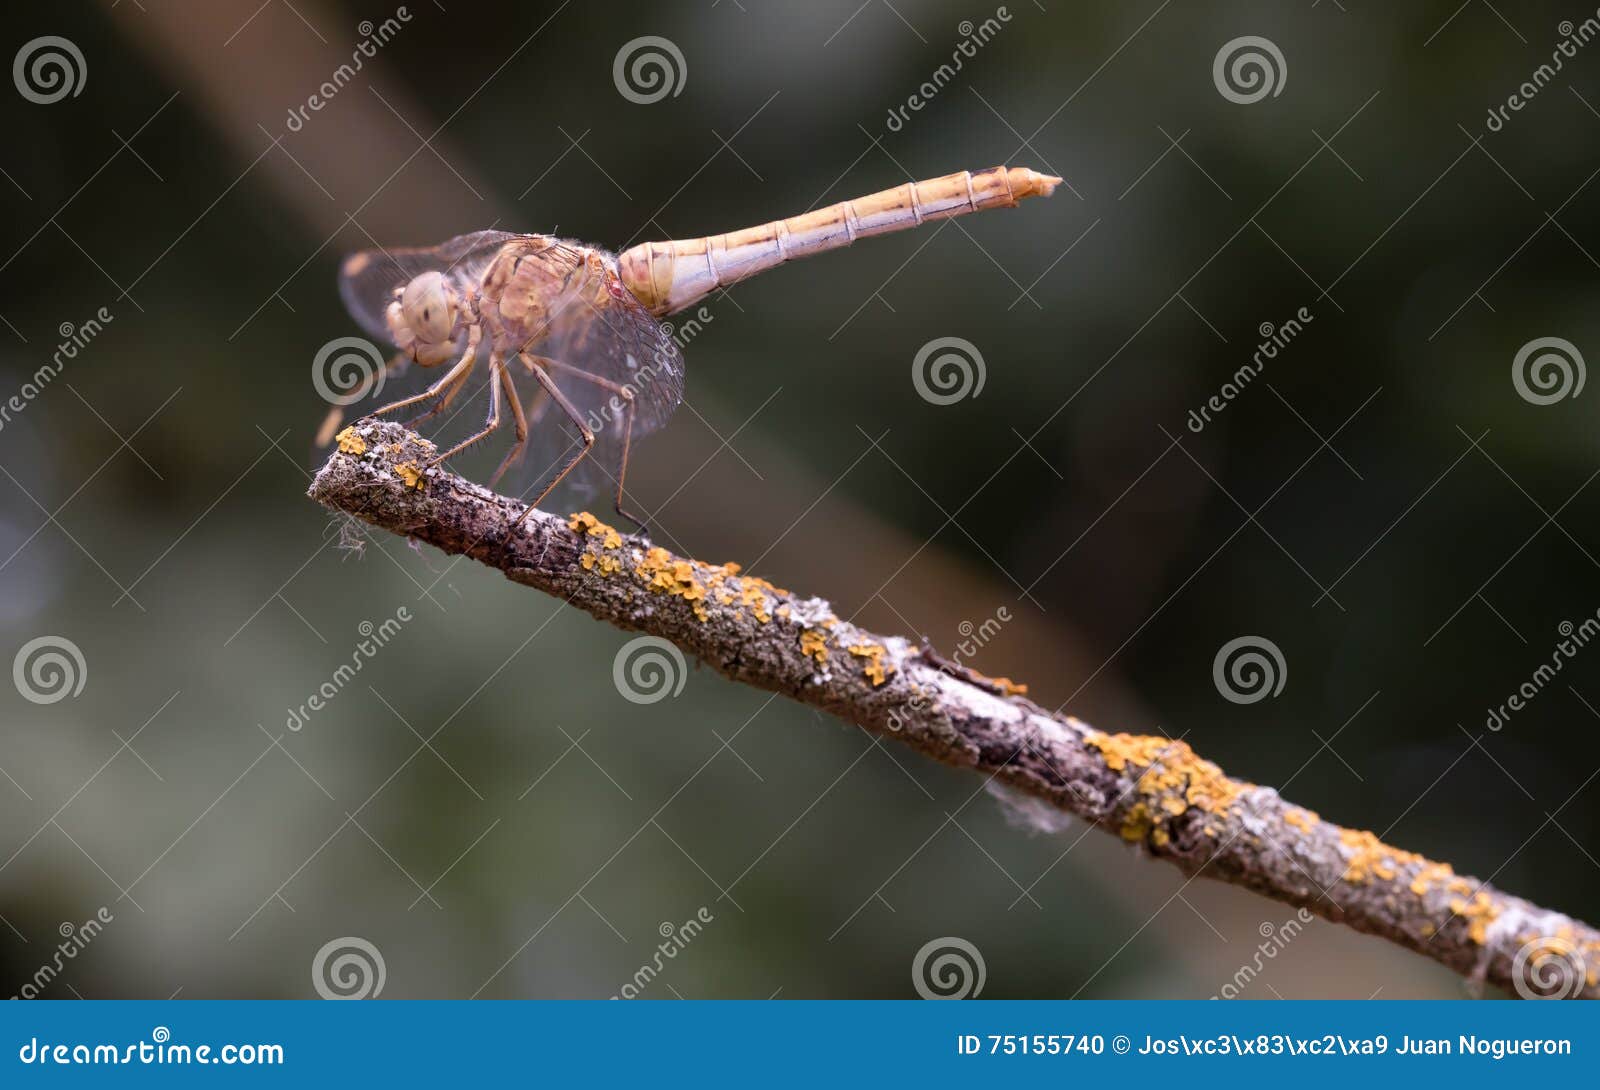 libelula balanced on dry branch